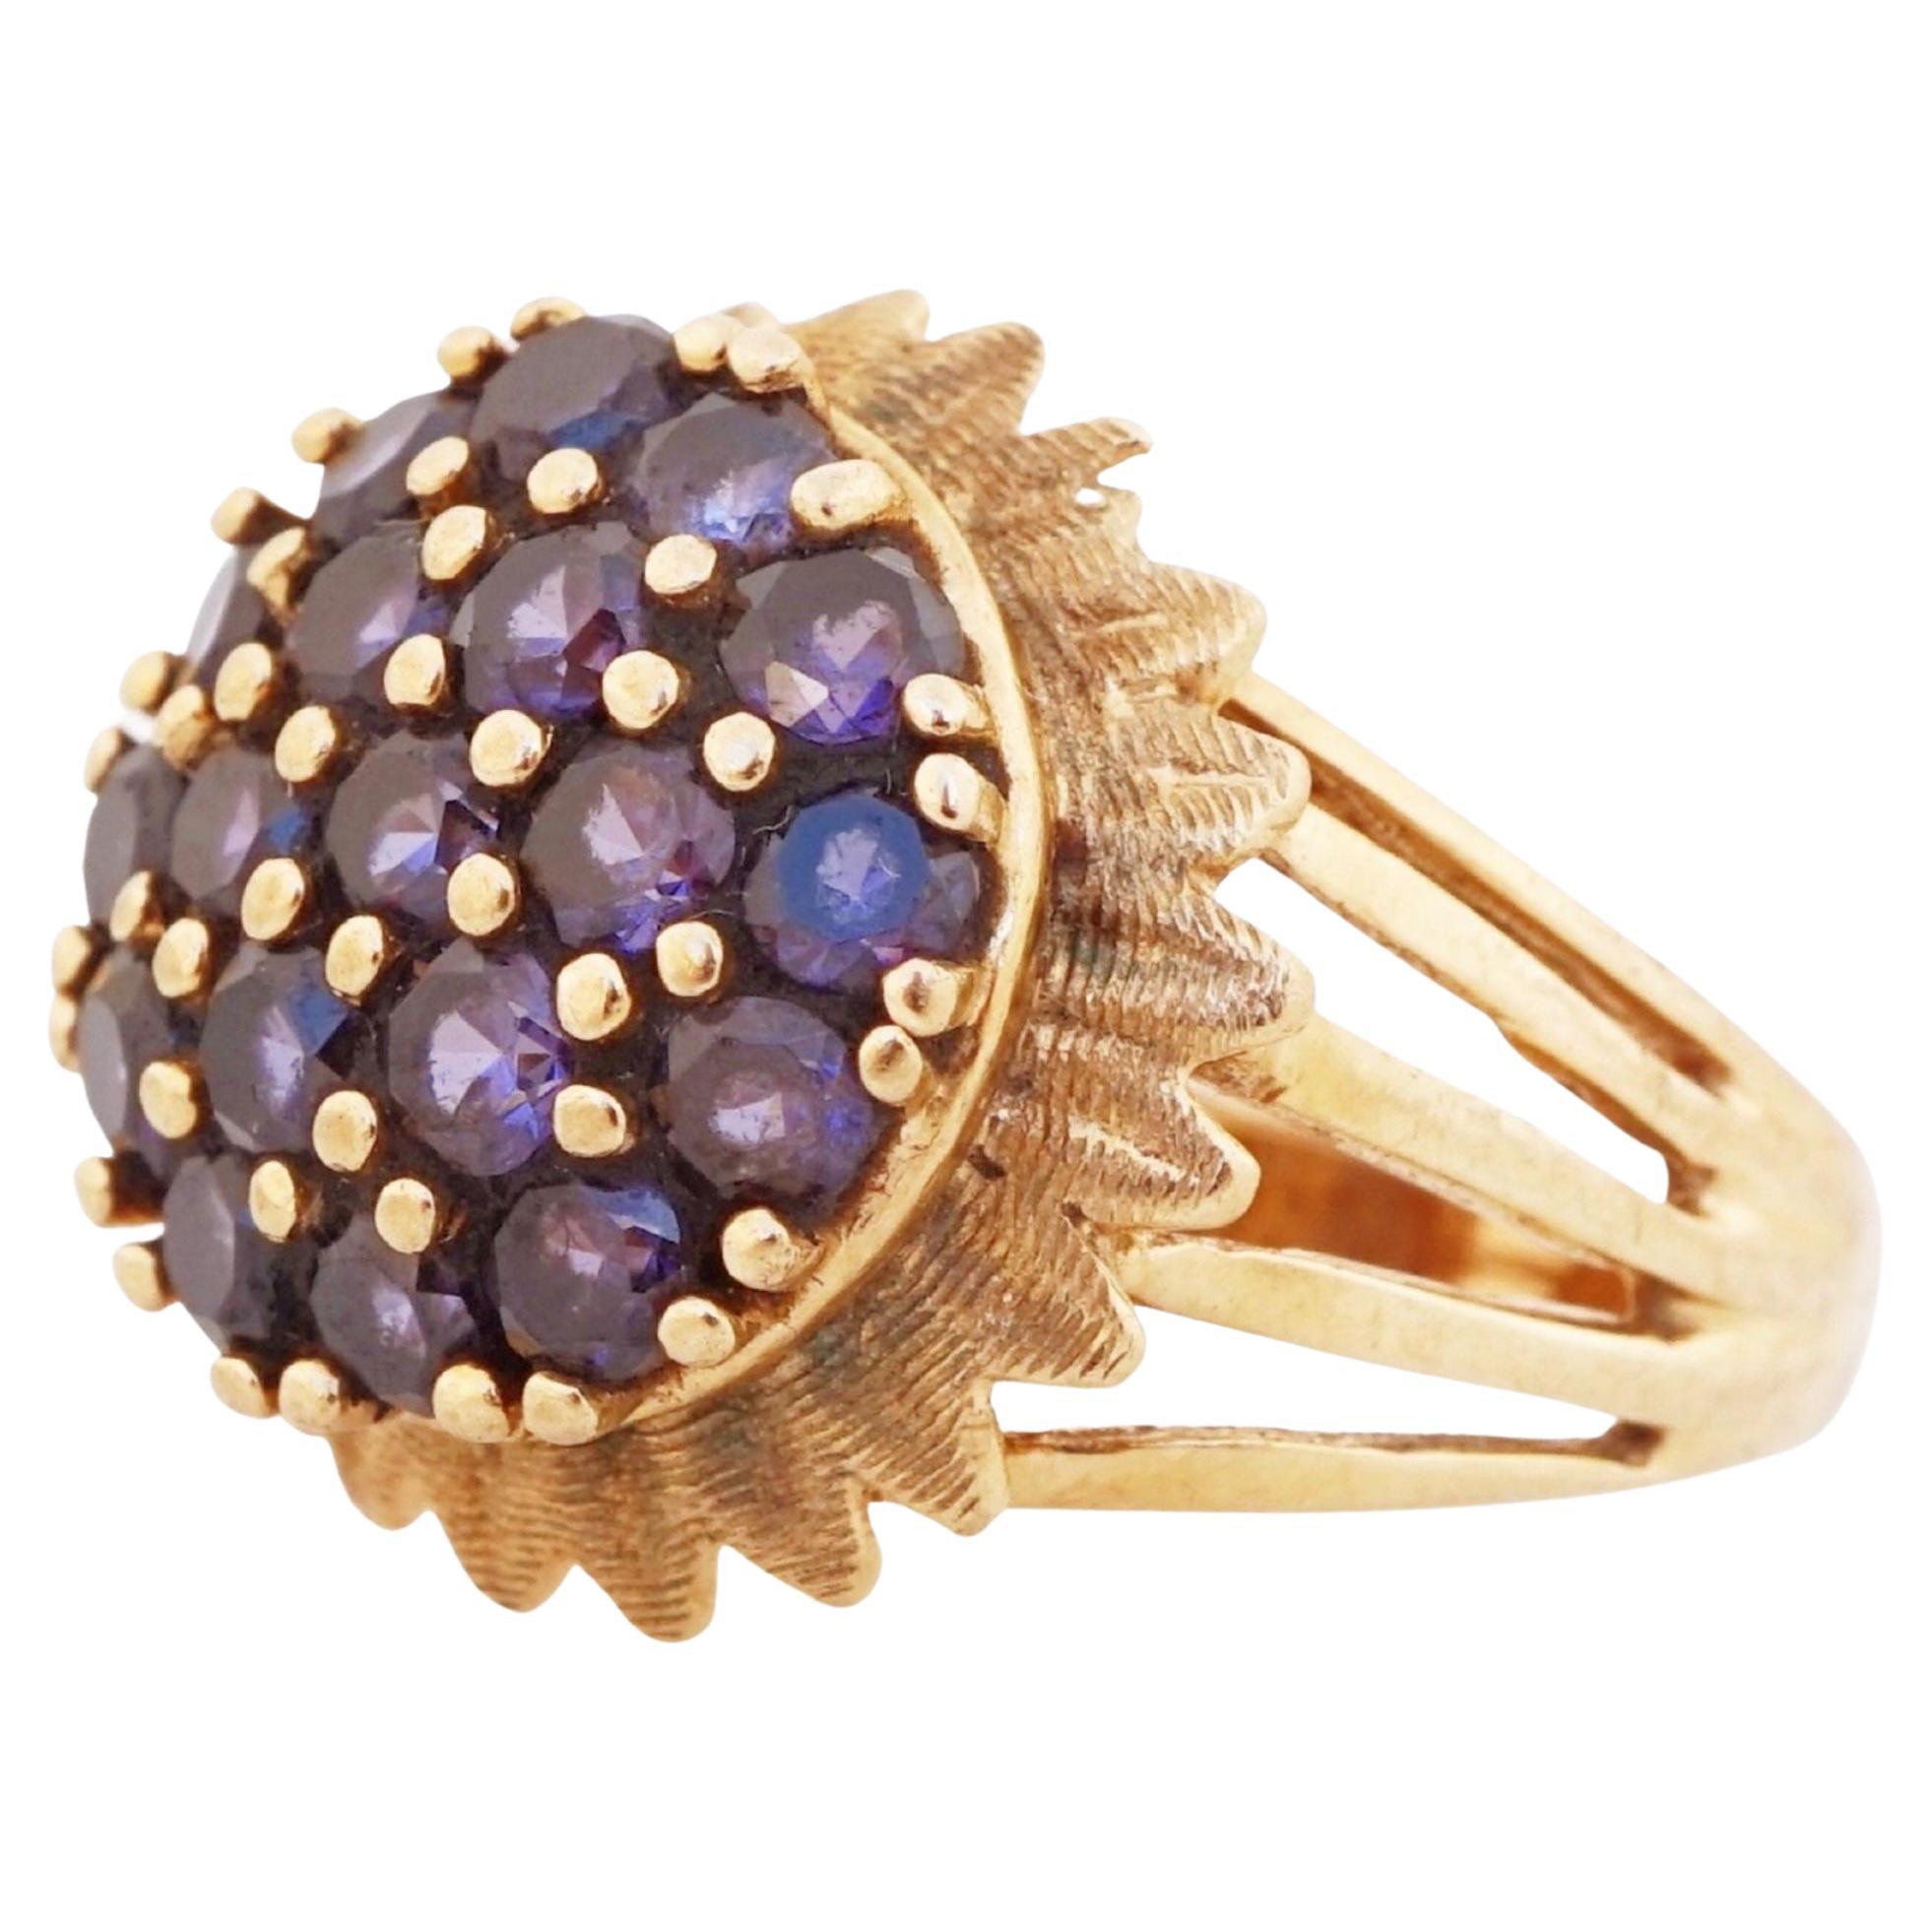 10k Gold Floral Ring mit Saphir-Edelsteinen, 1970er Jahre